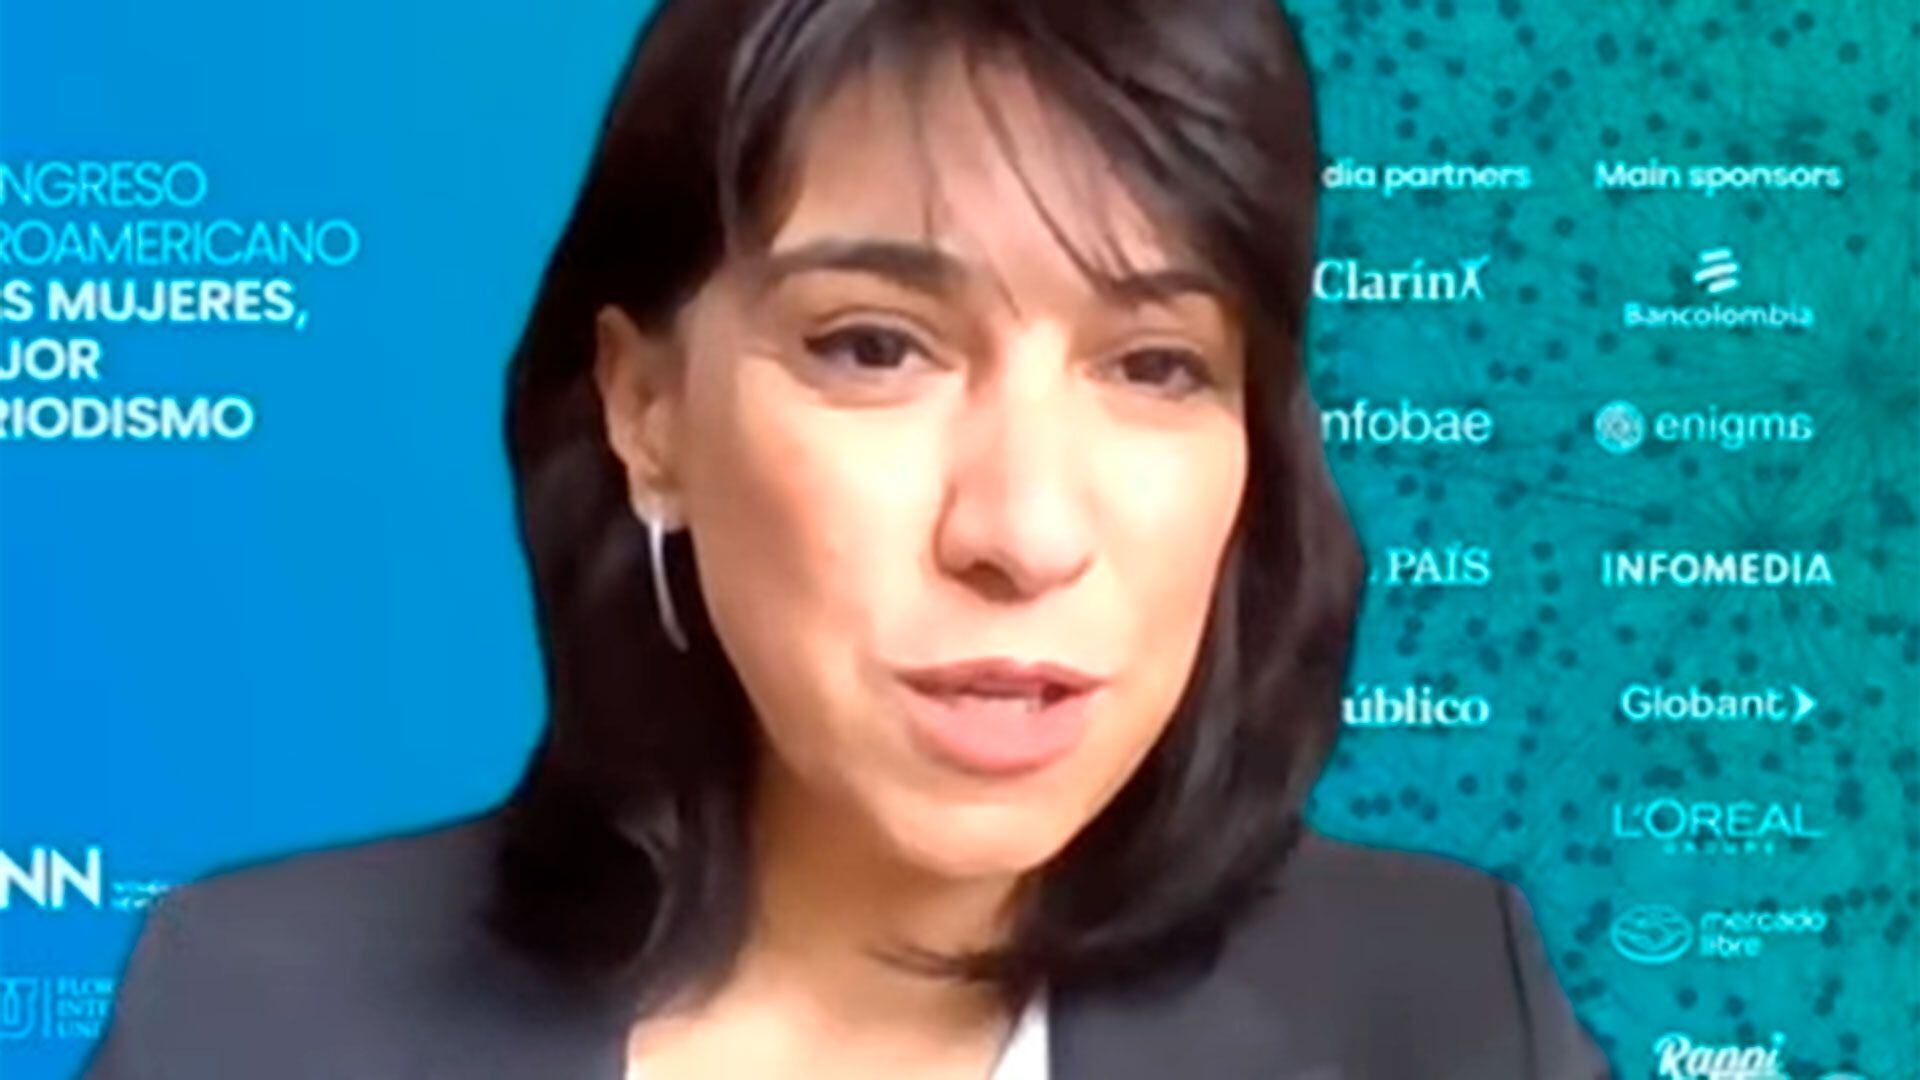 WINN - Congreso iberoamericano: Más mujeres, mejor periodismo